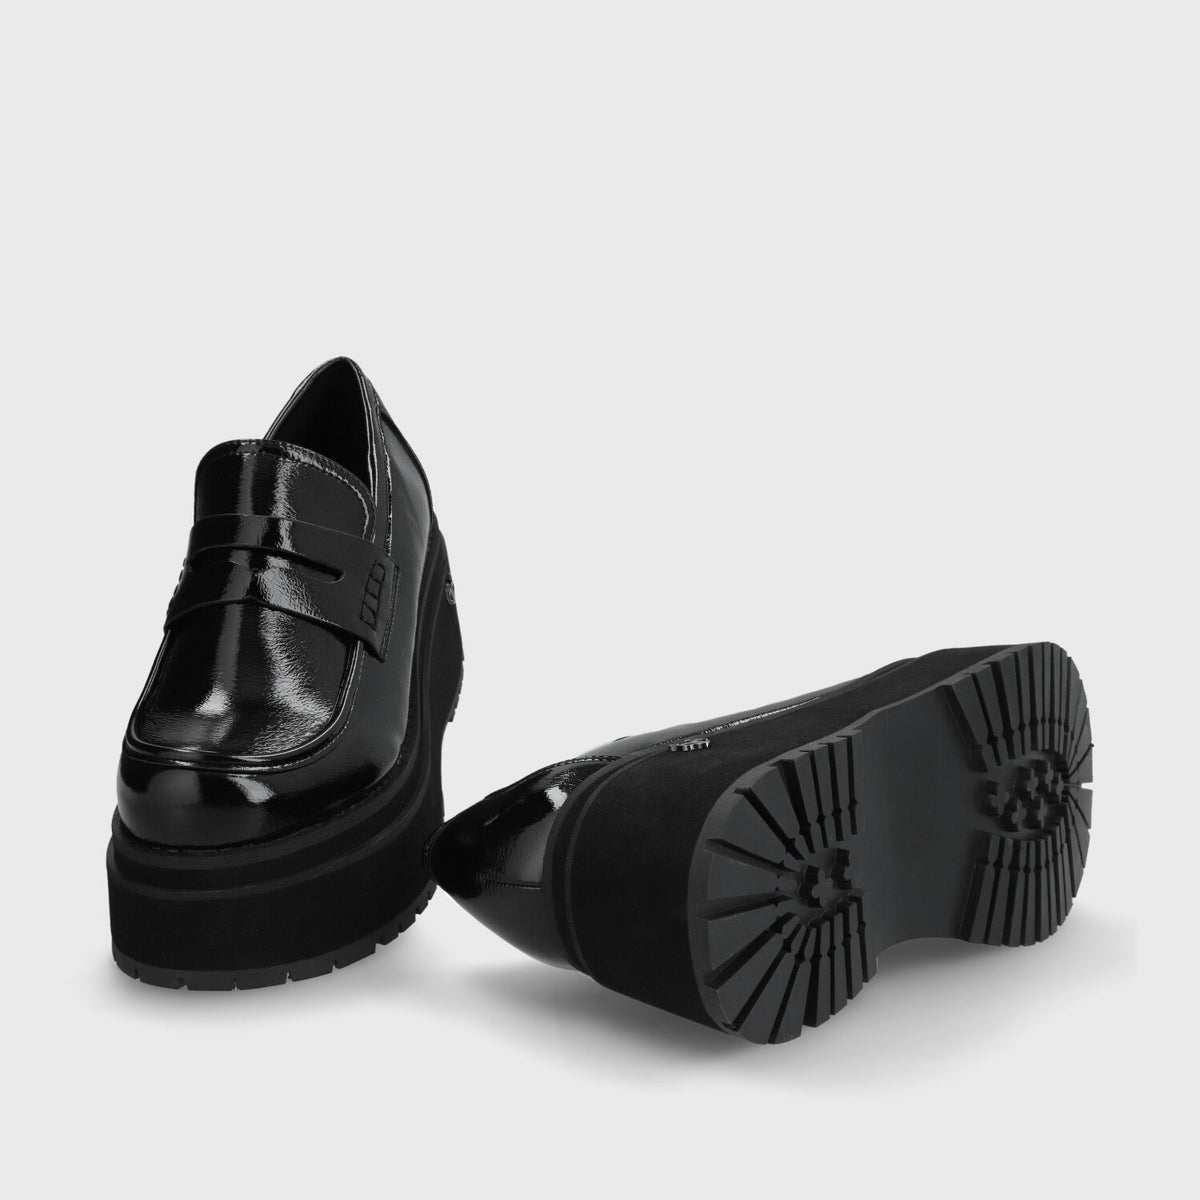 Zapato Plataforma Negro Mujer 15098 - Gotta Chile